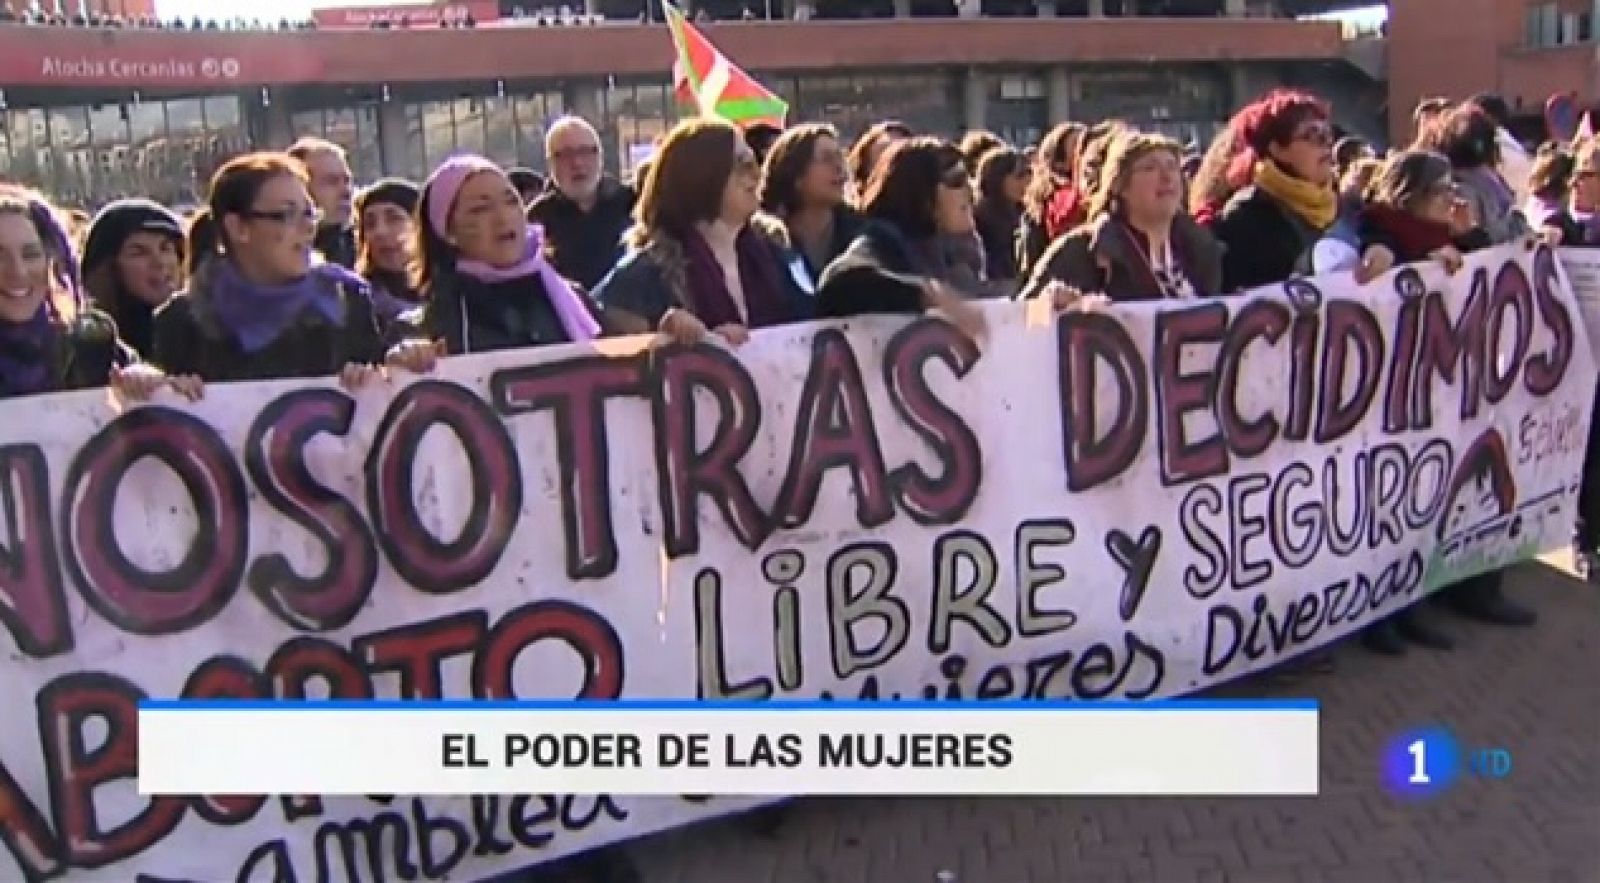 ¿Te acuerdas? | 2010-2020, la década feminista - RTVE.es